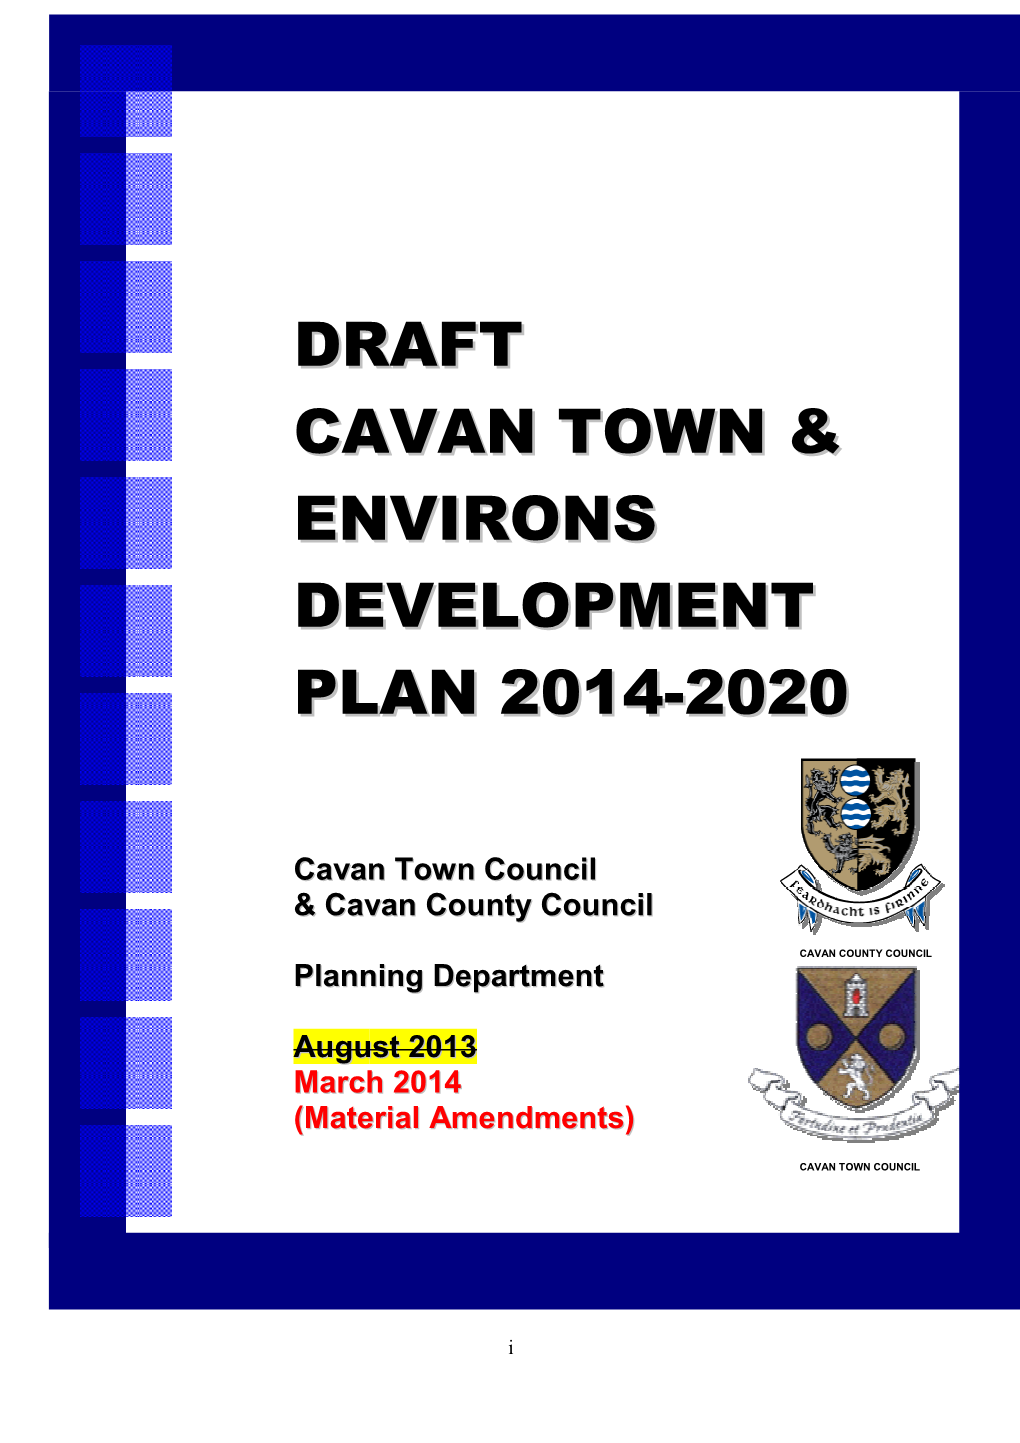 Amended Draft Cavan Town & Environs Plan